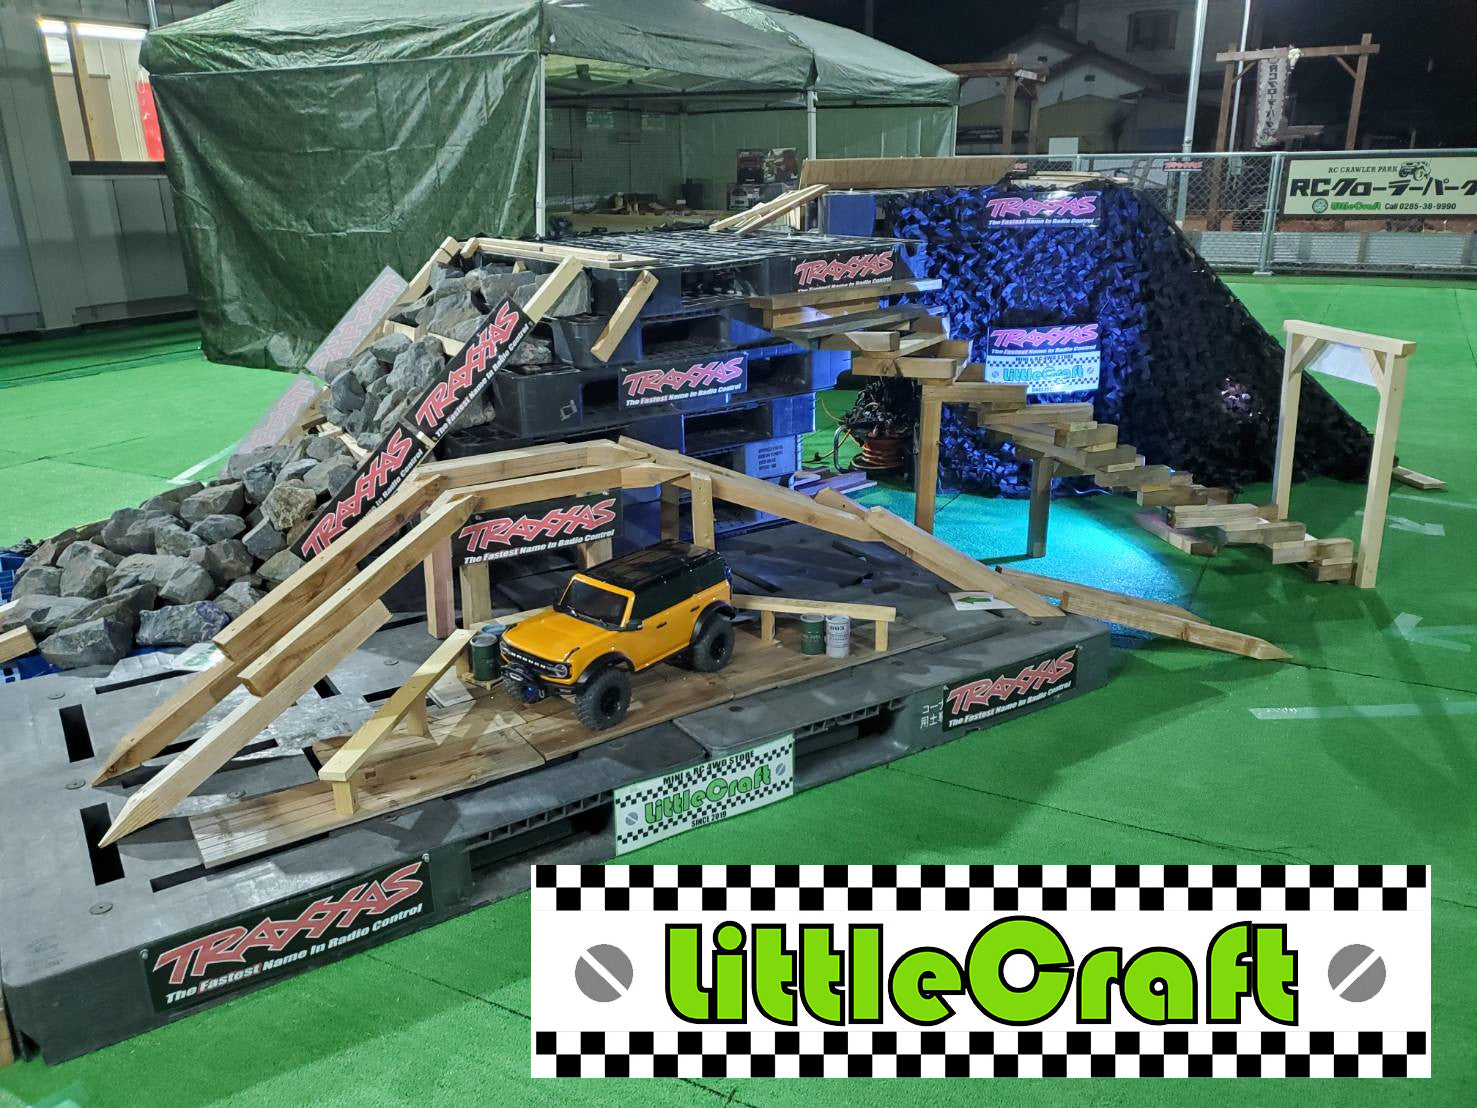 TRAXXAS 体験走行会　4/29～5/1　栃木県LittleCraft RCクローラーパークでトラクサスTRX4の体験走行会が開催されます！　トラクサス製品の即売会も行いますので、ぜひお越しくださいませ。　詳細はブログの続きへ